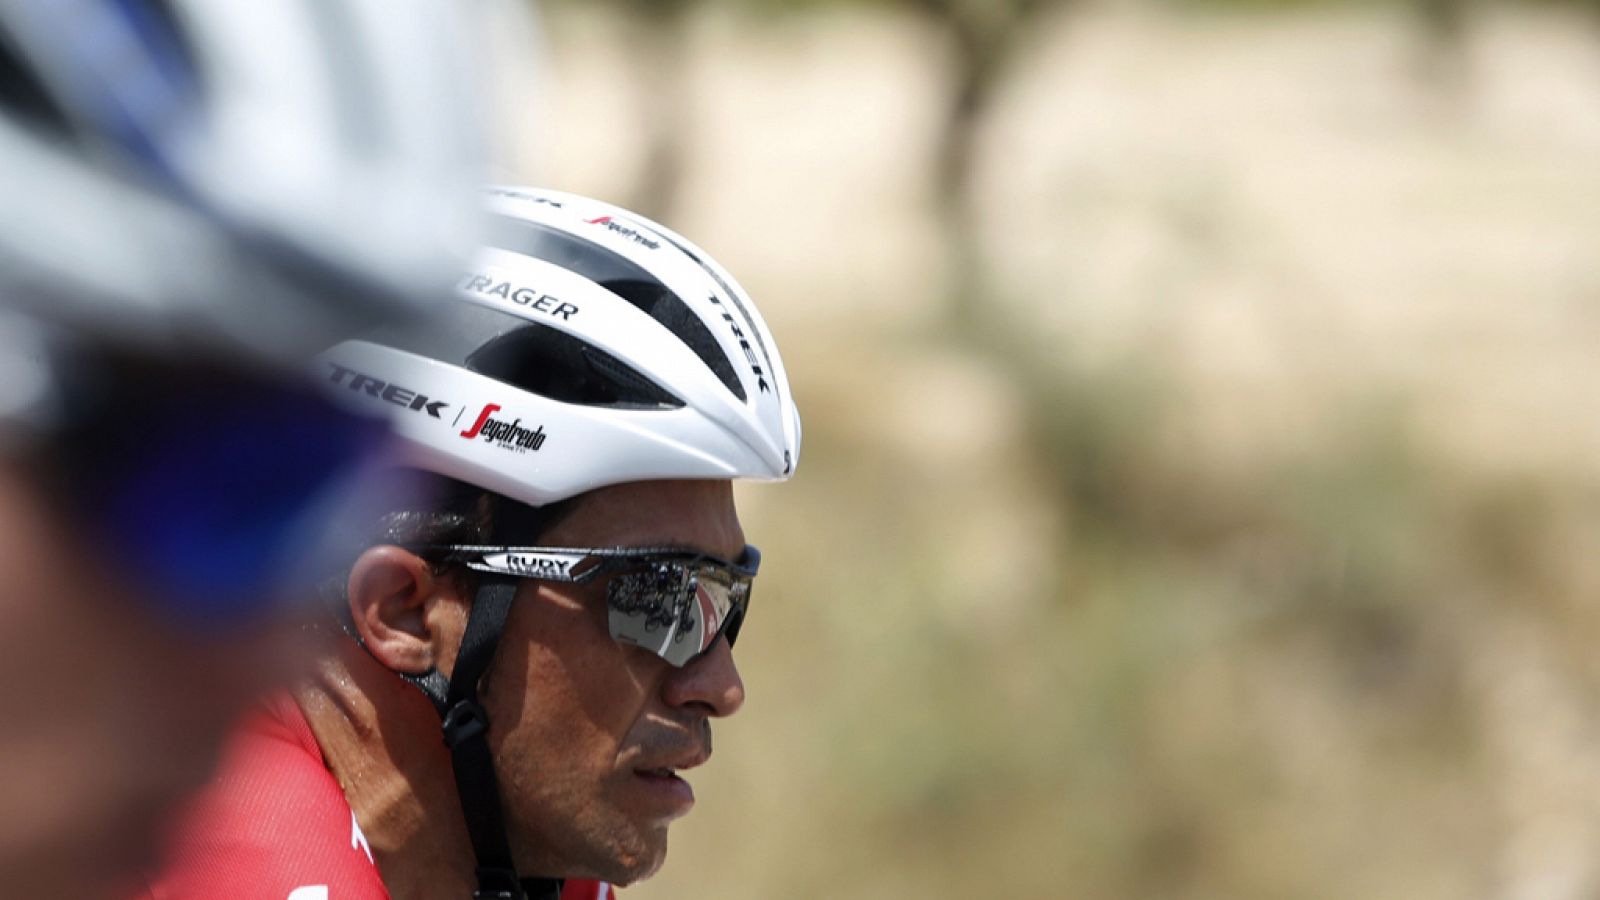 Vuelta 2017 | Contador: "Me ha faltado chispa en la rampa final" de Cumbre del Sol